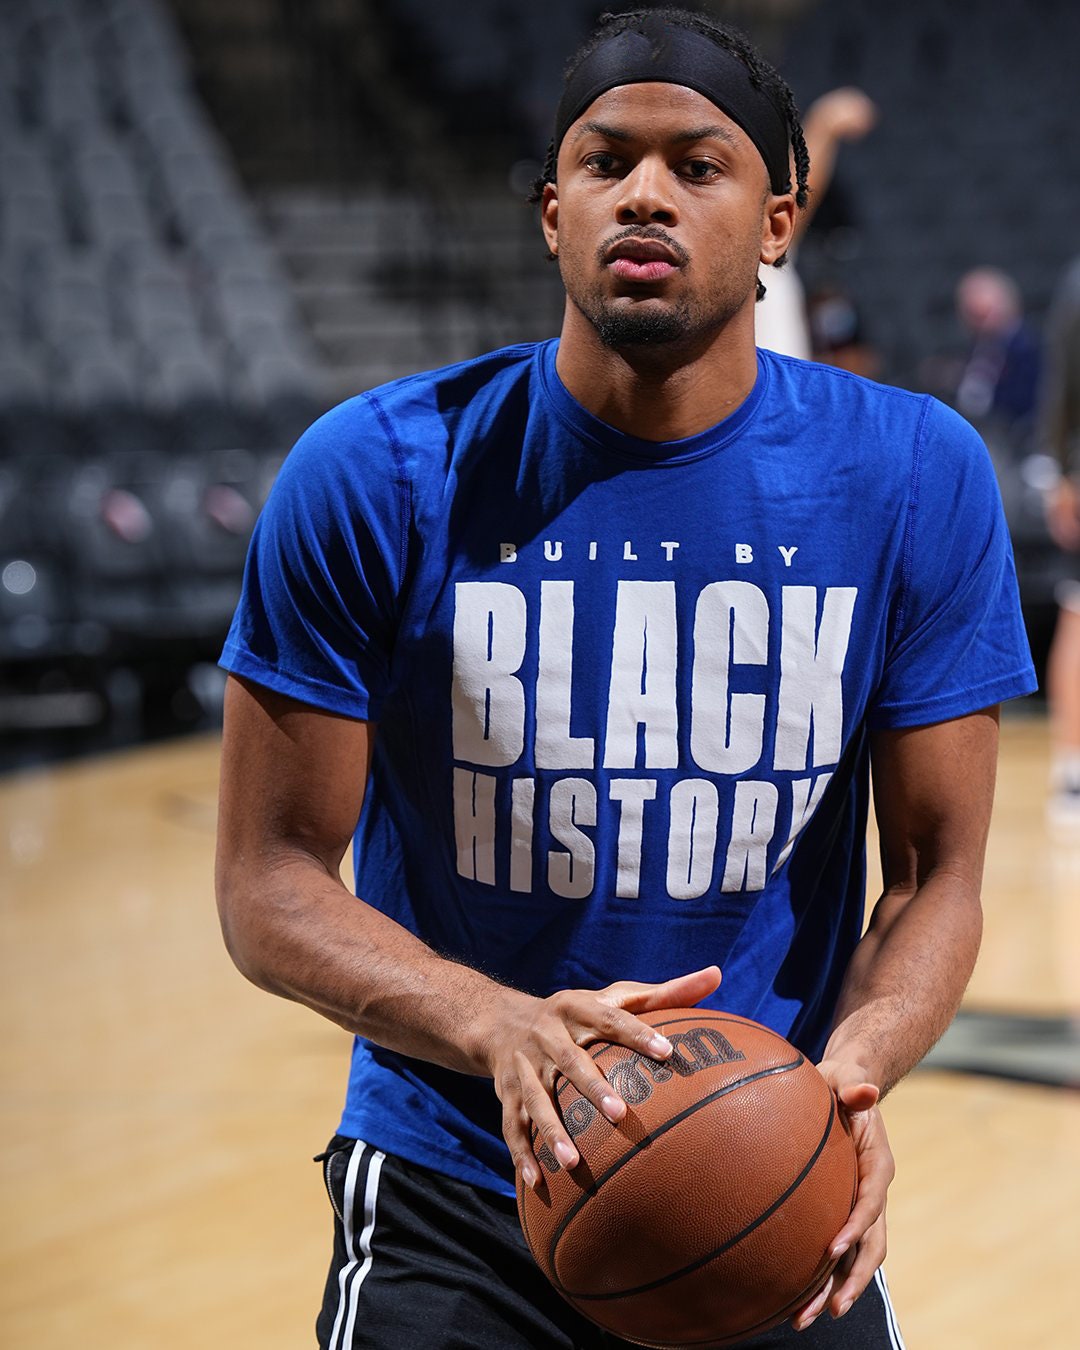 NBA Black History Month Shirt, Built By Black History Shirt - High-Quality  Printed Brand